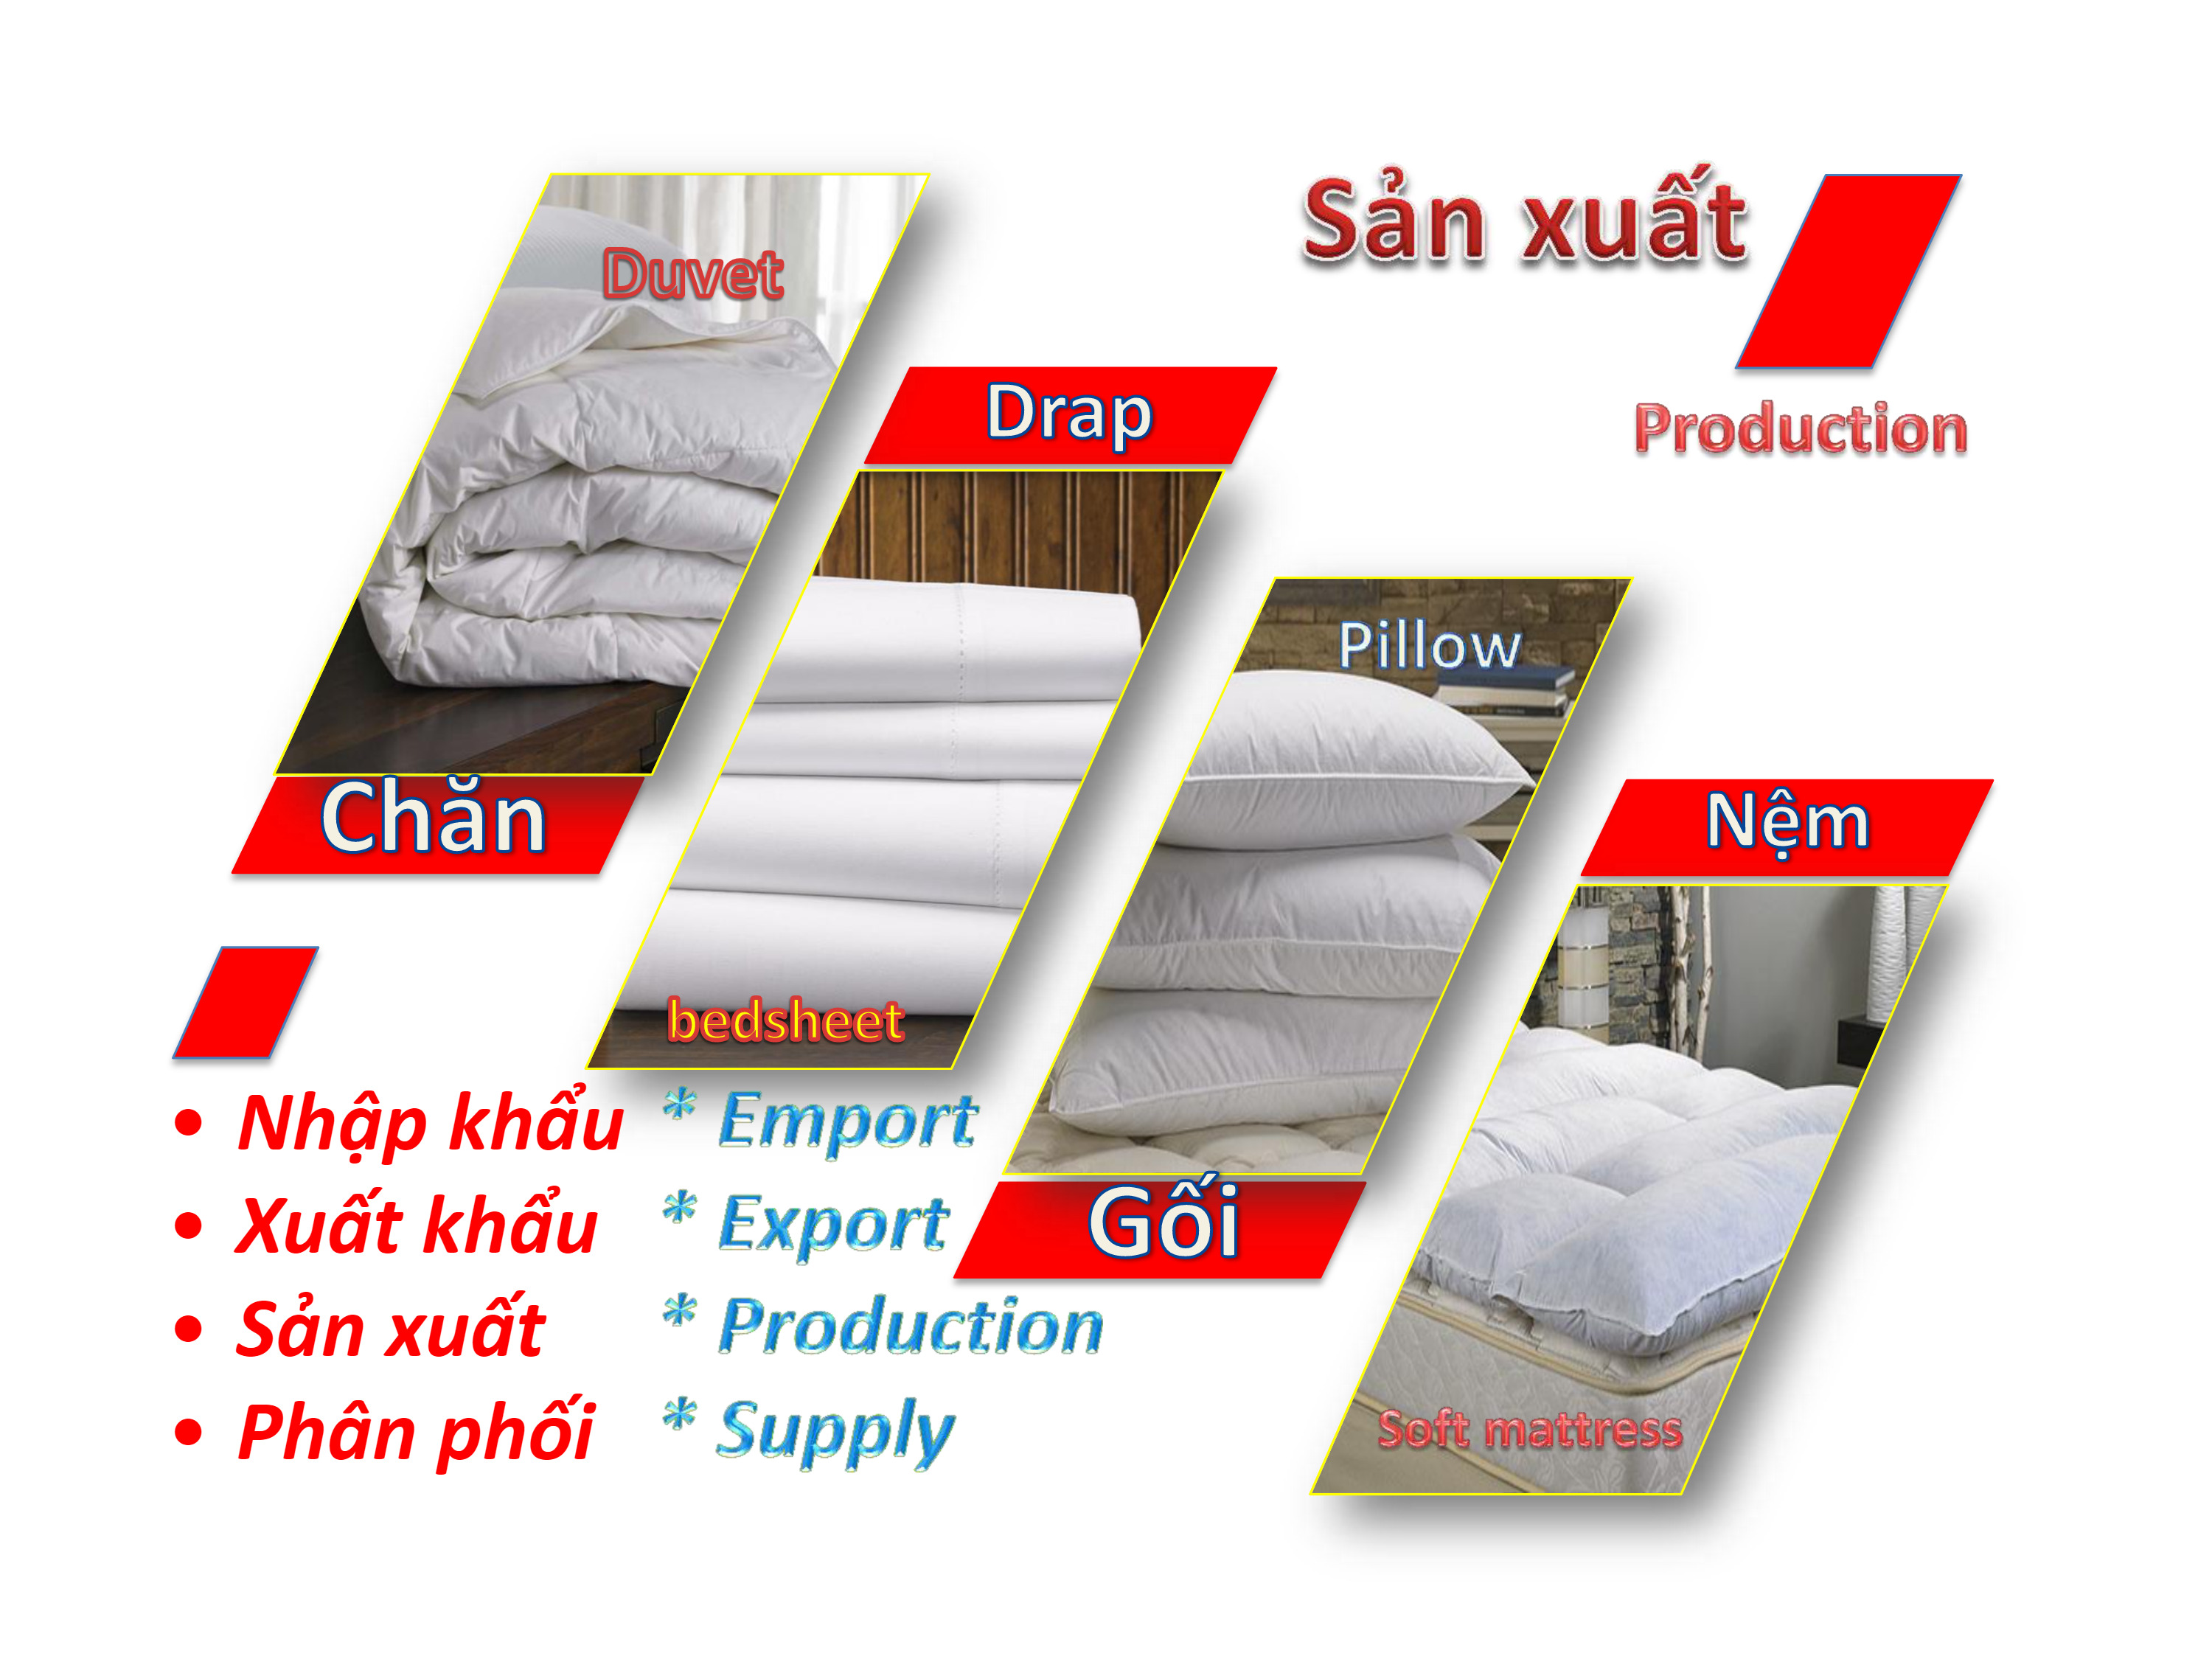 Chăn Hè Cao Cấp DADA - Chất liệu 100% Cotton mềm mịn mát - Size 2m2x2m - Chuyên dụng trong Khách Sạn/Resort 5 sao - Hàng Độc Quyền Chính Hãng